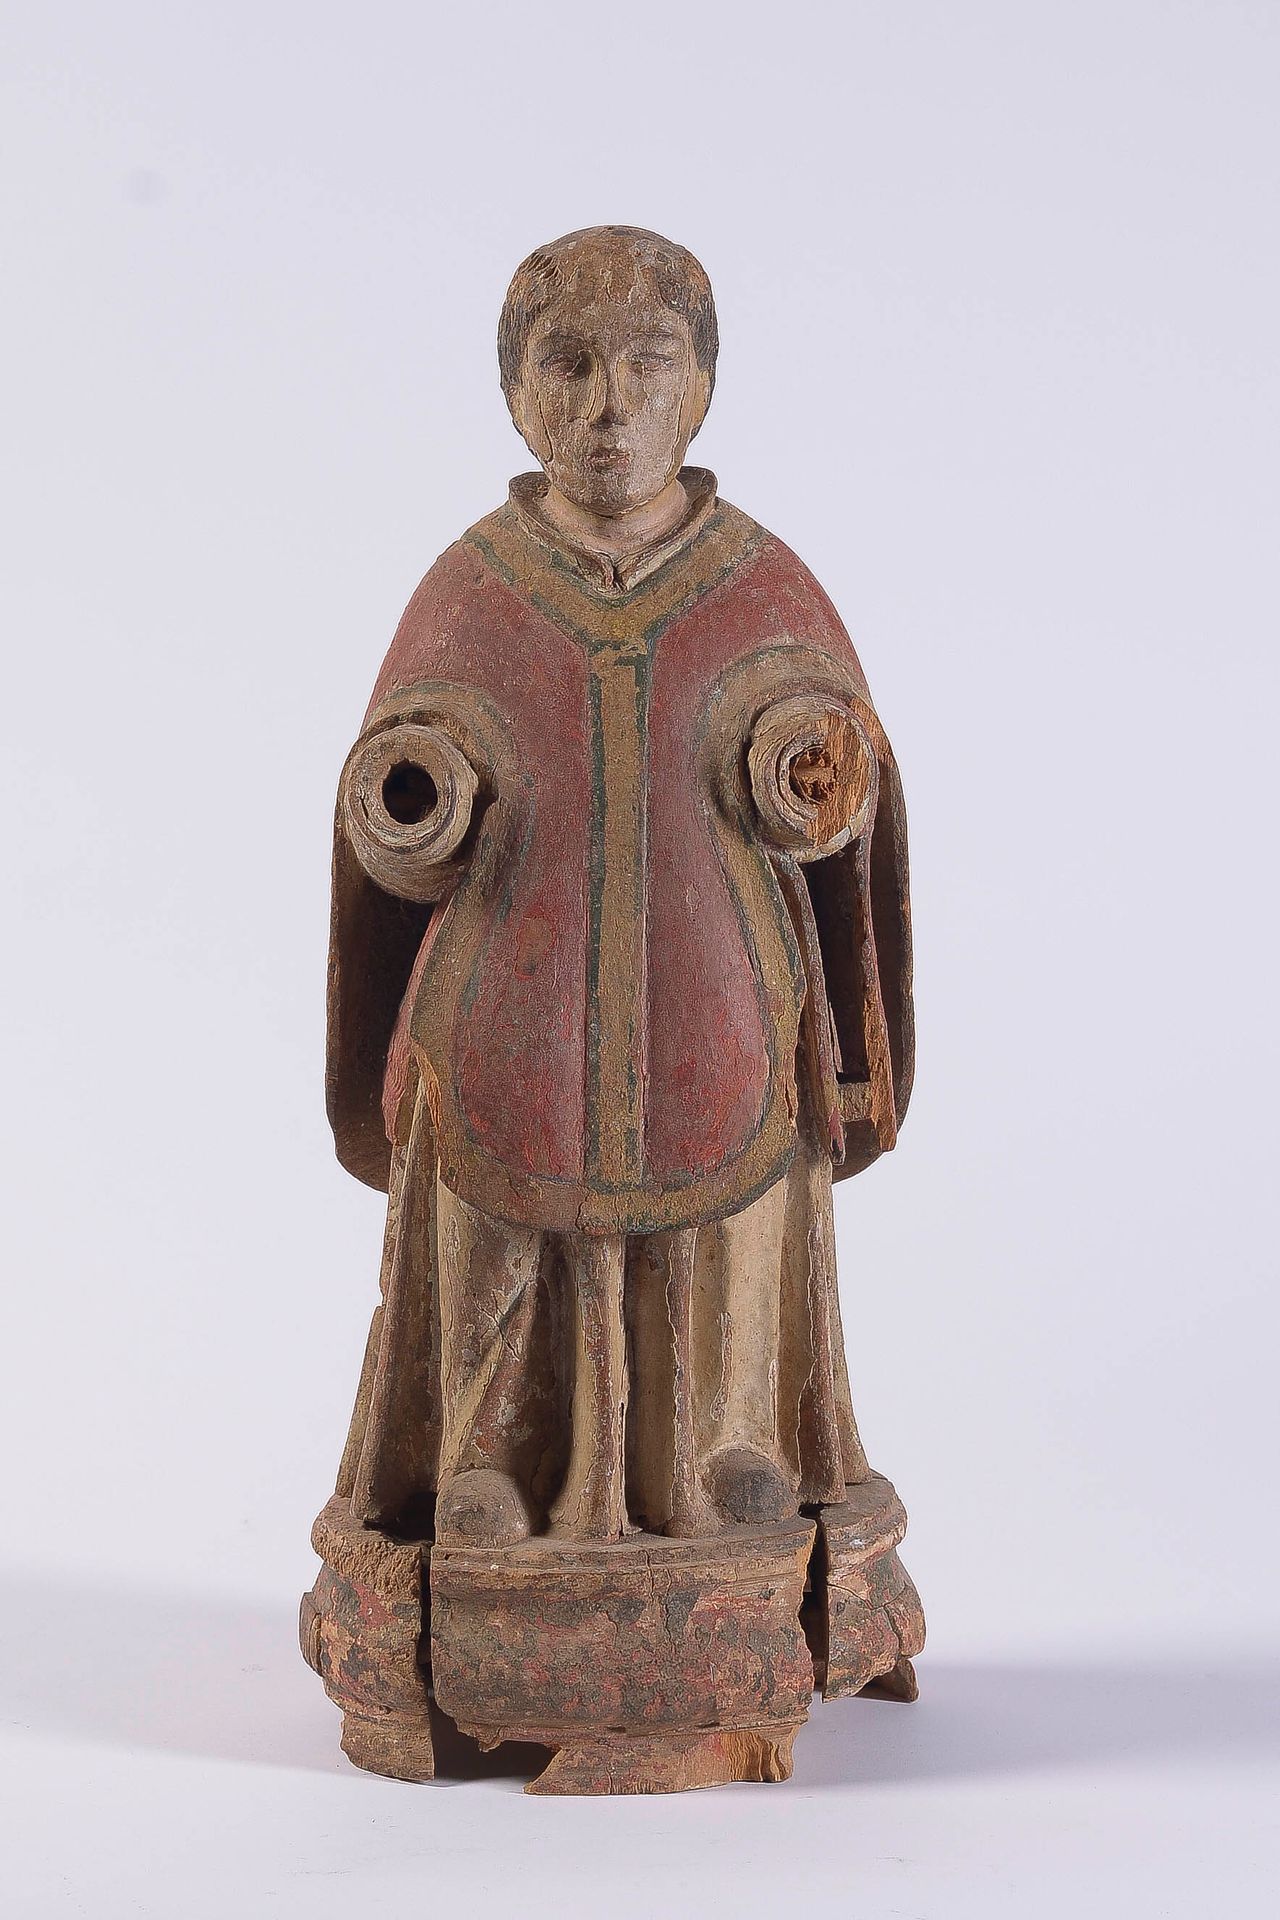 Null Figura di santo in legno policromo, con casula romana e manipolo in mano

S&hellip;